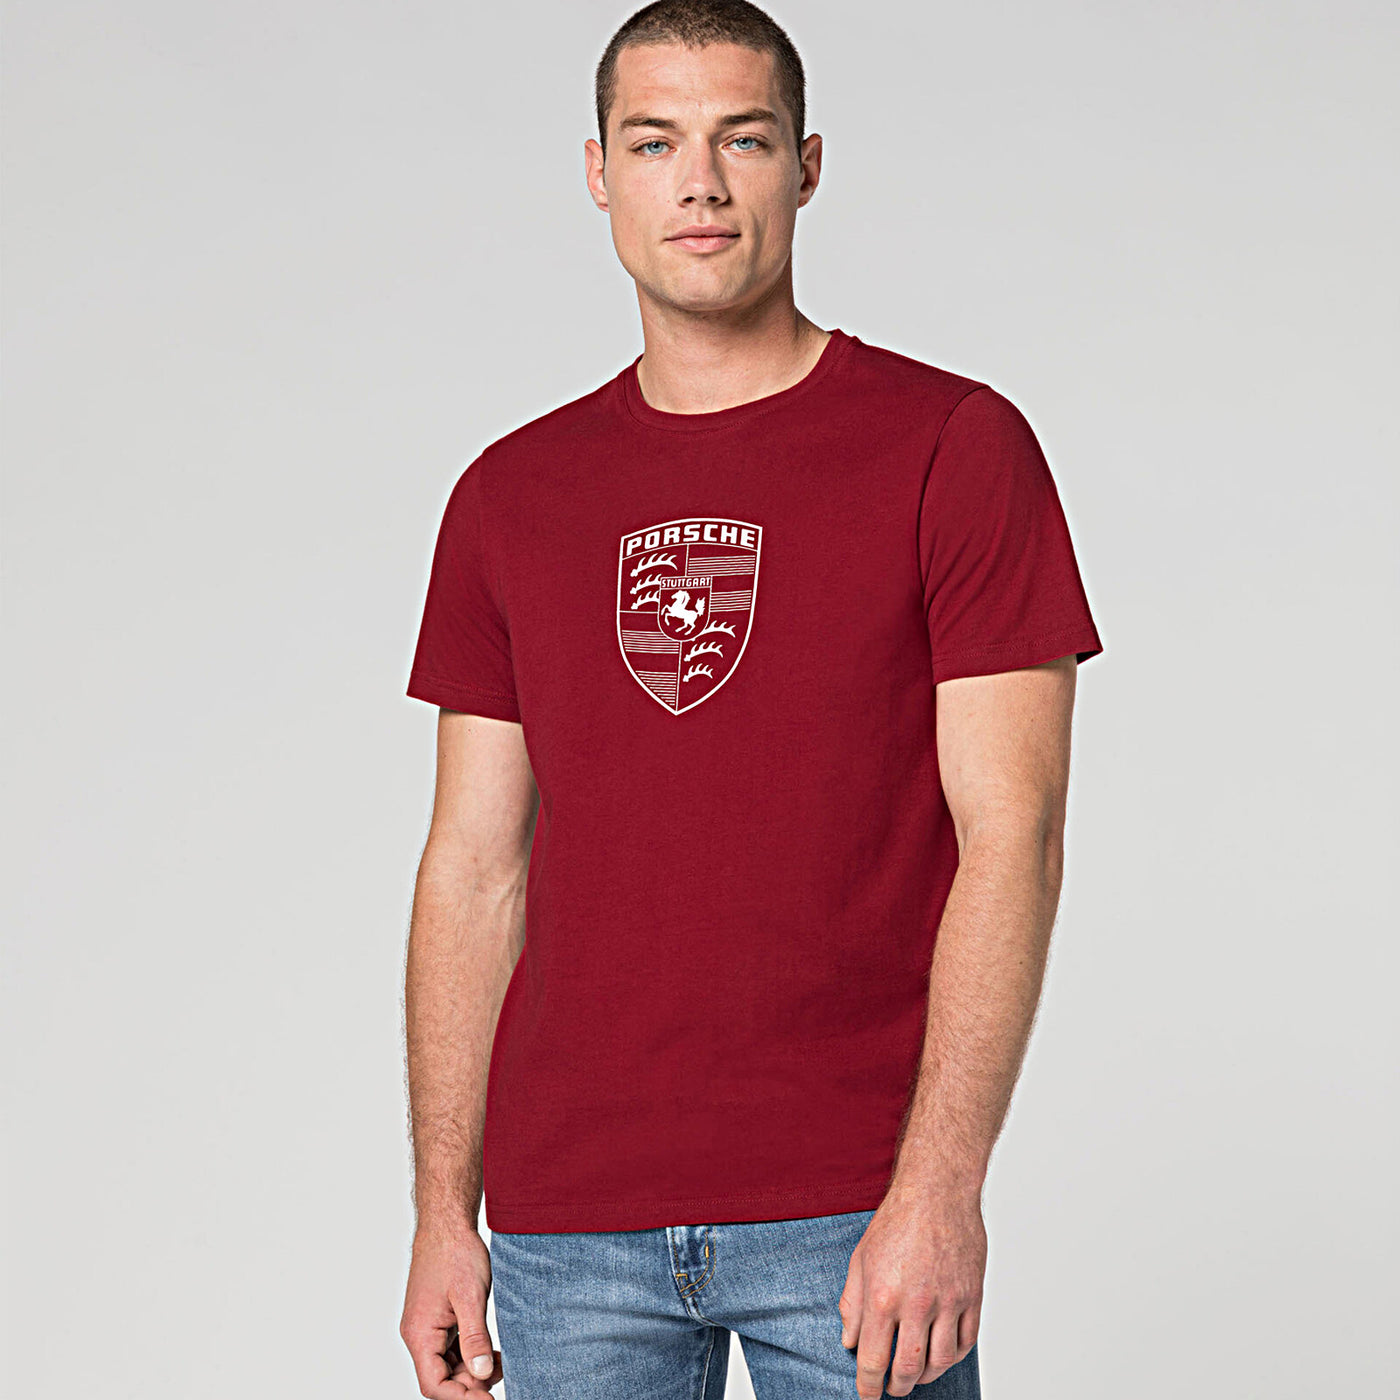 Camiseta de manga larga con bolsillo de marca registrada - Hombre – ShopWSS